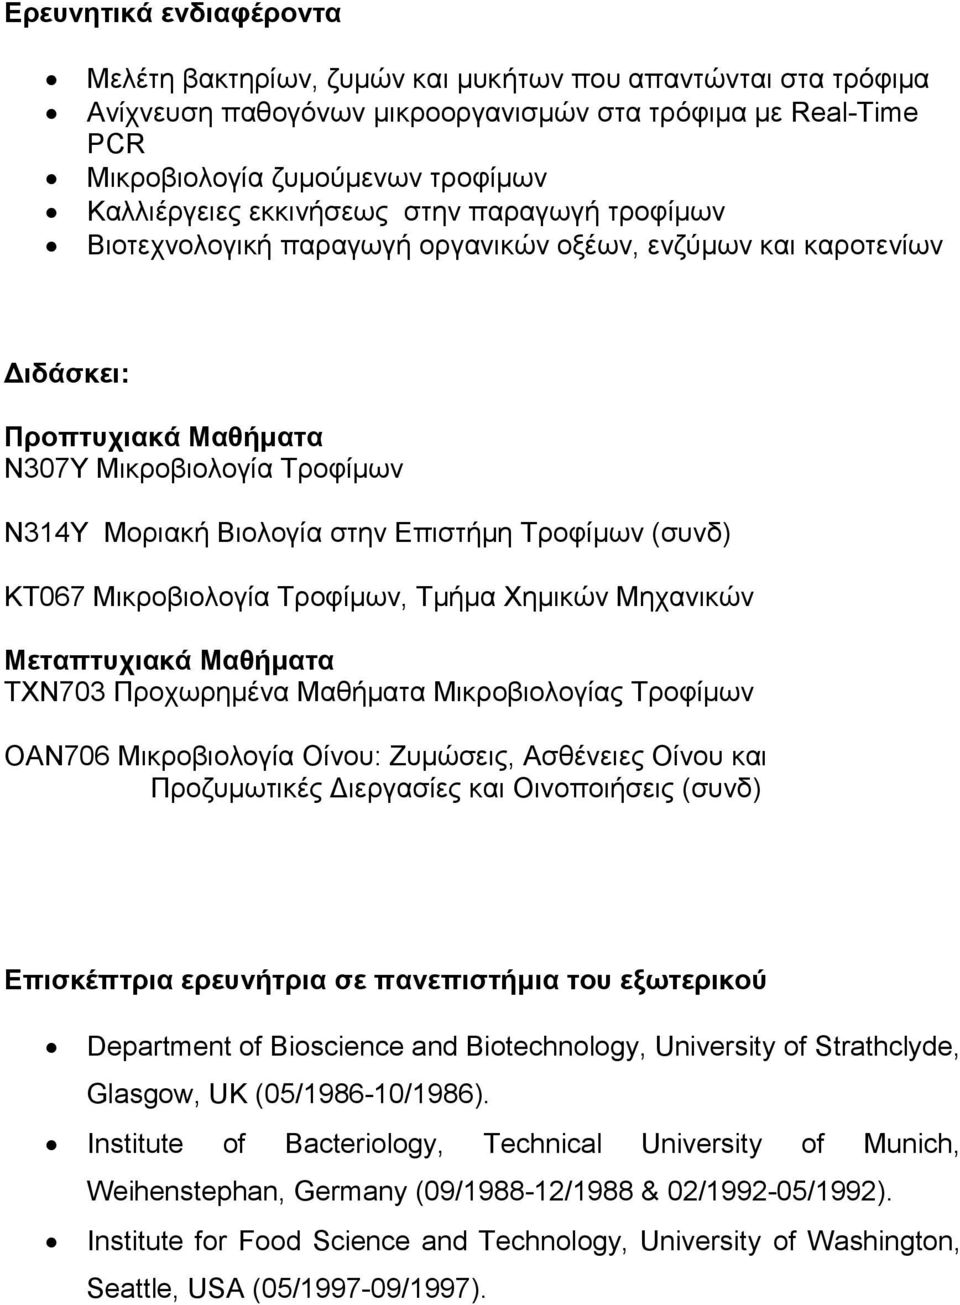 Τροφίμων (συνδ) ΚΤ067 Μικροβιολογία Τροφίμων, Τμήμα Χημικών Μηχανικών Μεταπτυχιακά Μαθήματα ΤΧΝ703 Προχωρημένα Μαθήματα Μικροβιολογίας Τροφίμων ΟΑΝ706 Μικροβιολογία Οίνου: Ζυμώσεις, Ασθένειες Οίνου